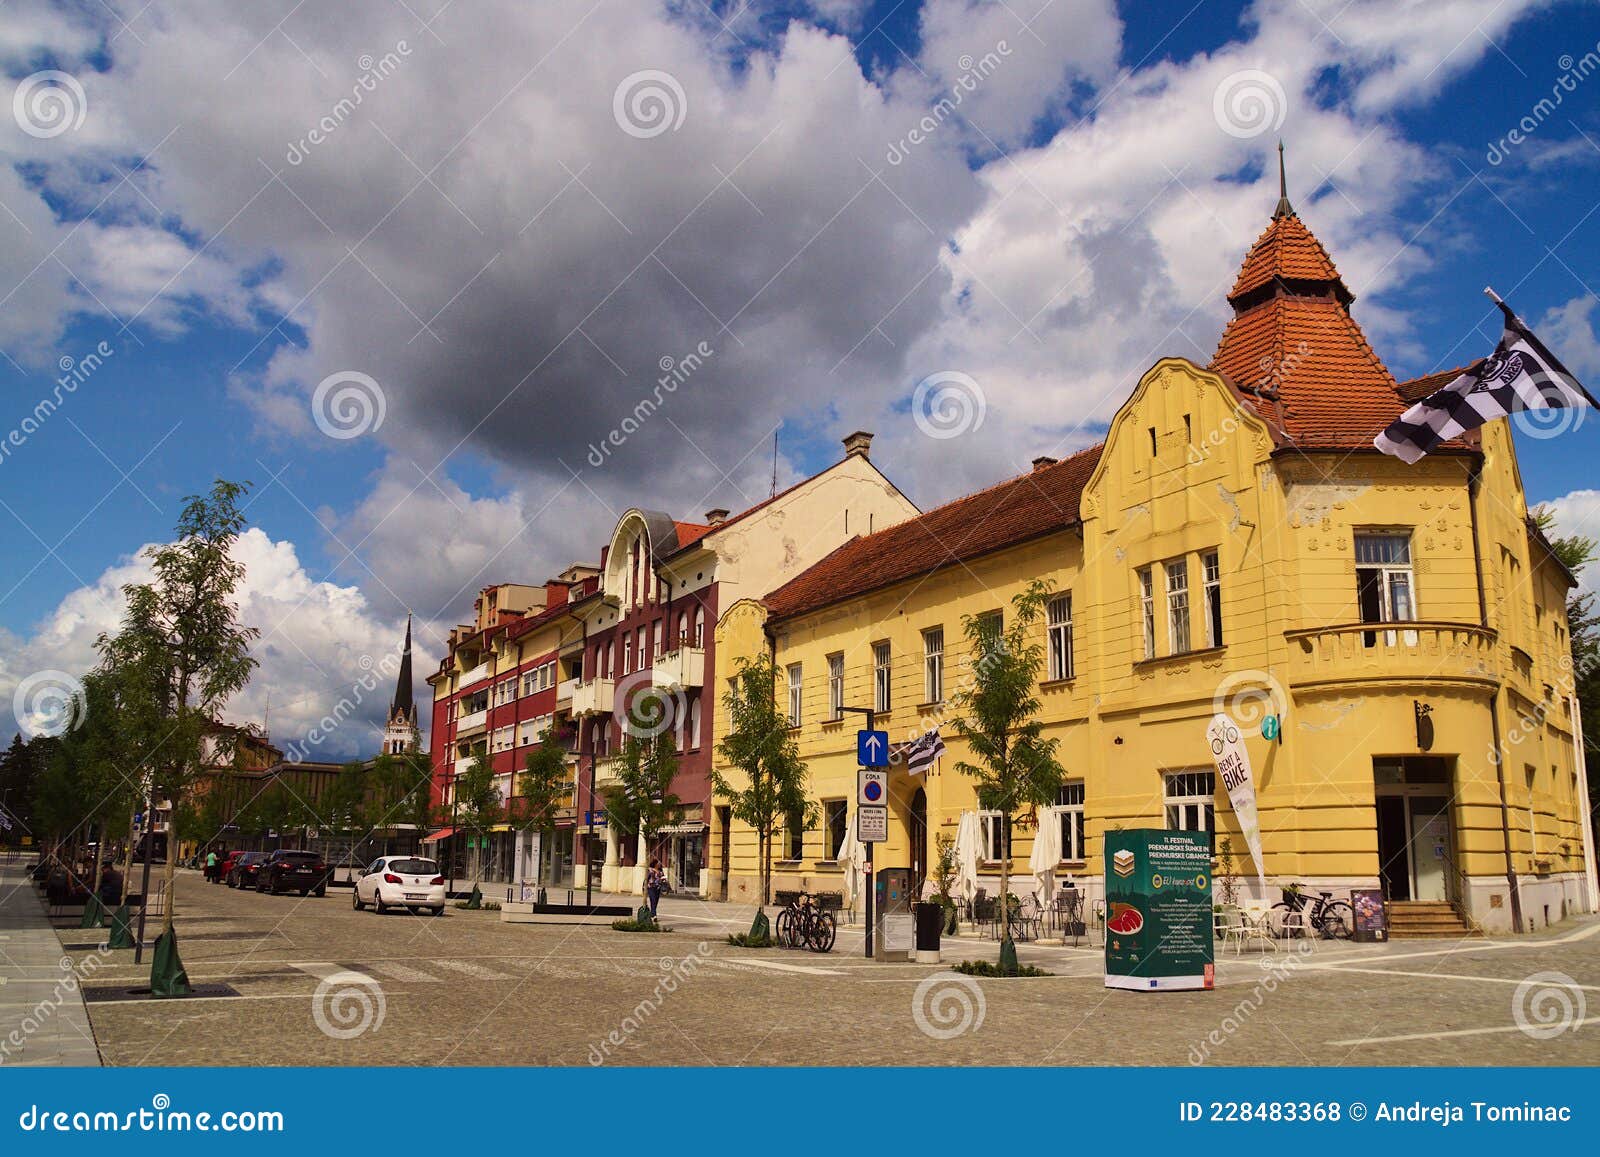 Slovenska Street, Murska Sobota, Slovenia Editorial Stock Photo - Image of  summer, historic: 228483368